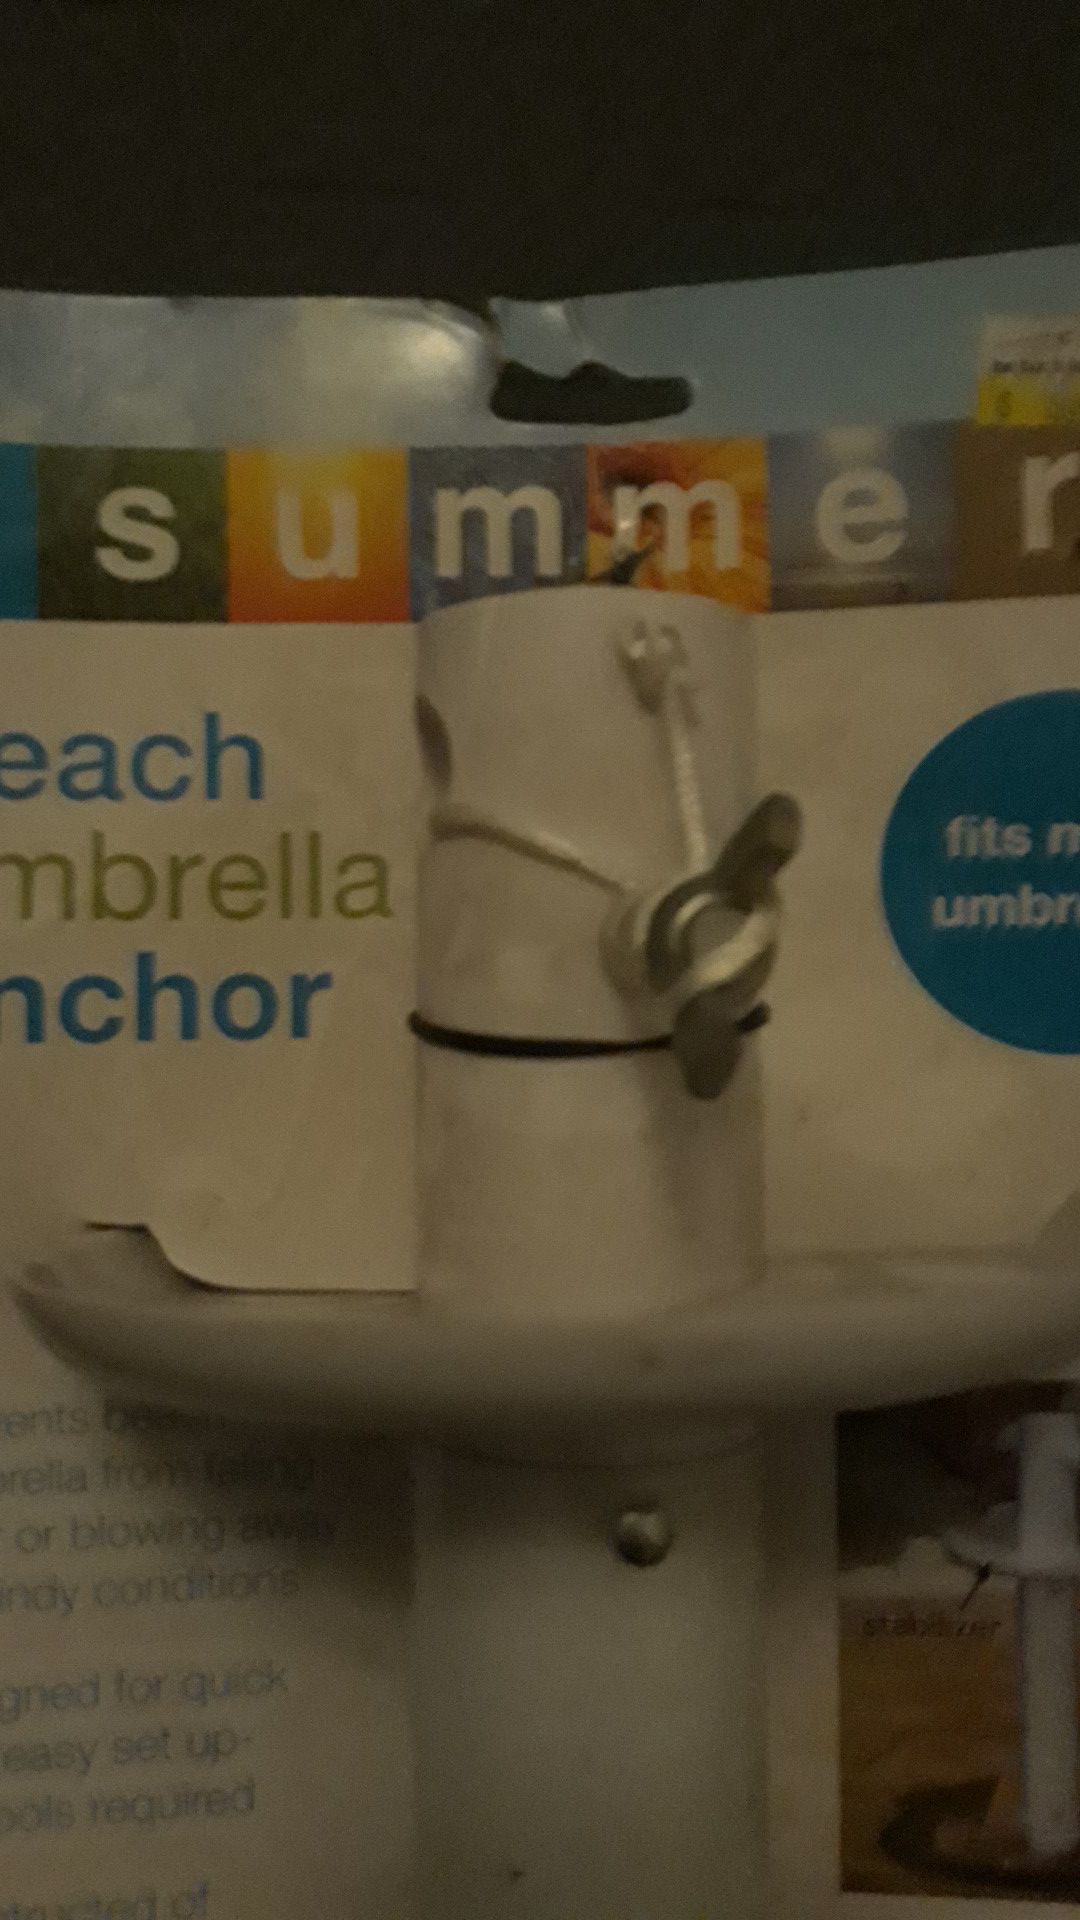 Beach umbrella anchor